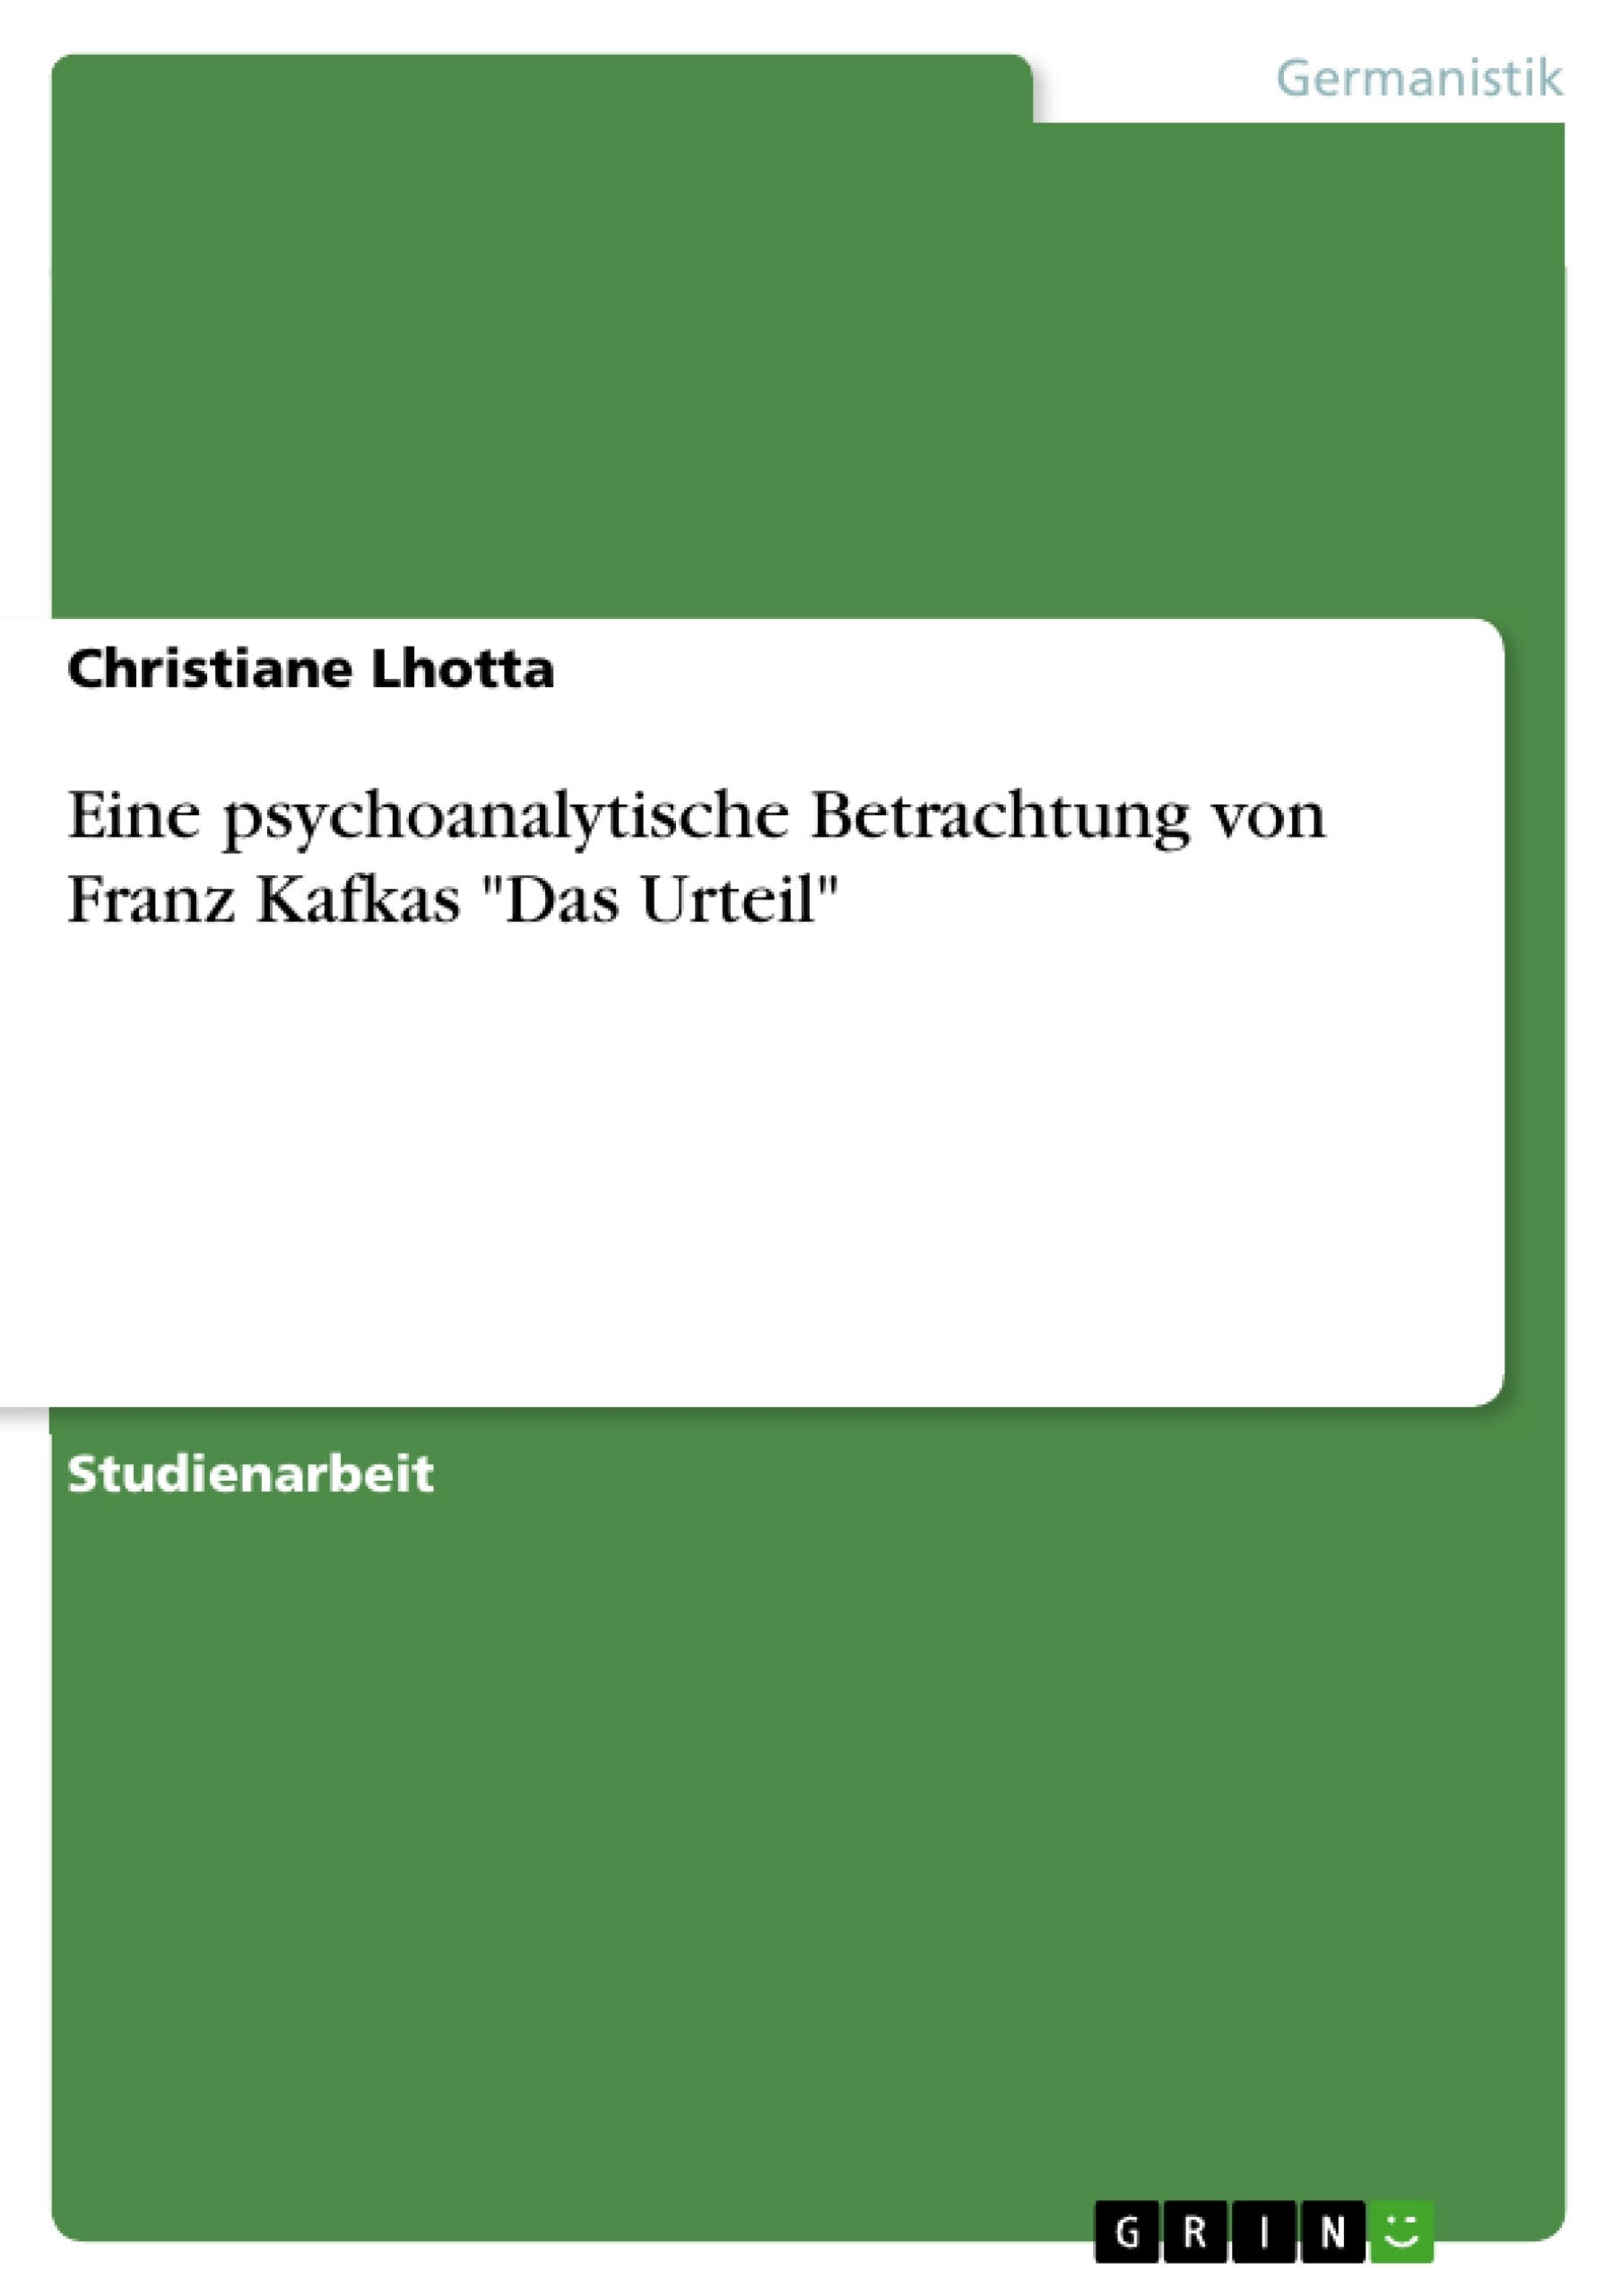 Title: Eine psychoanalytische Betrachtung von Franz Kafkas "Das Urteil"